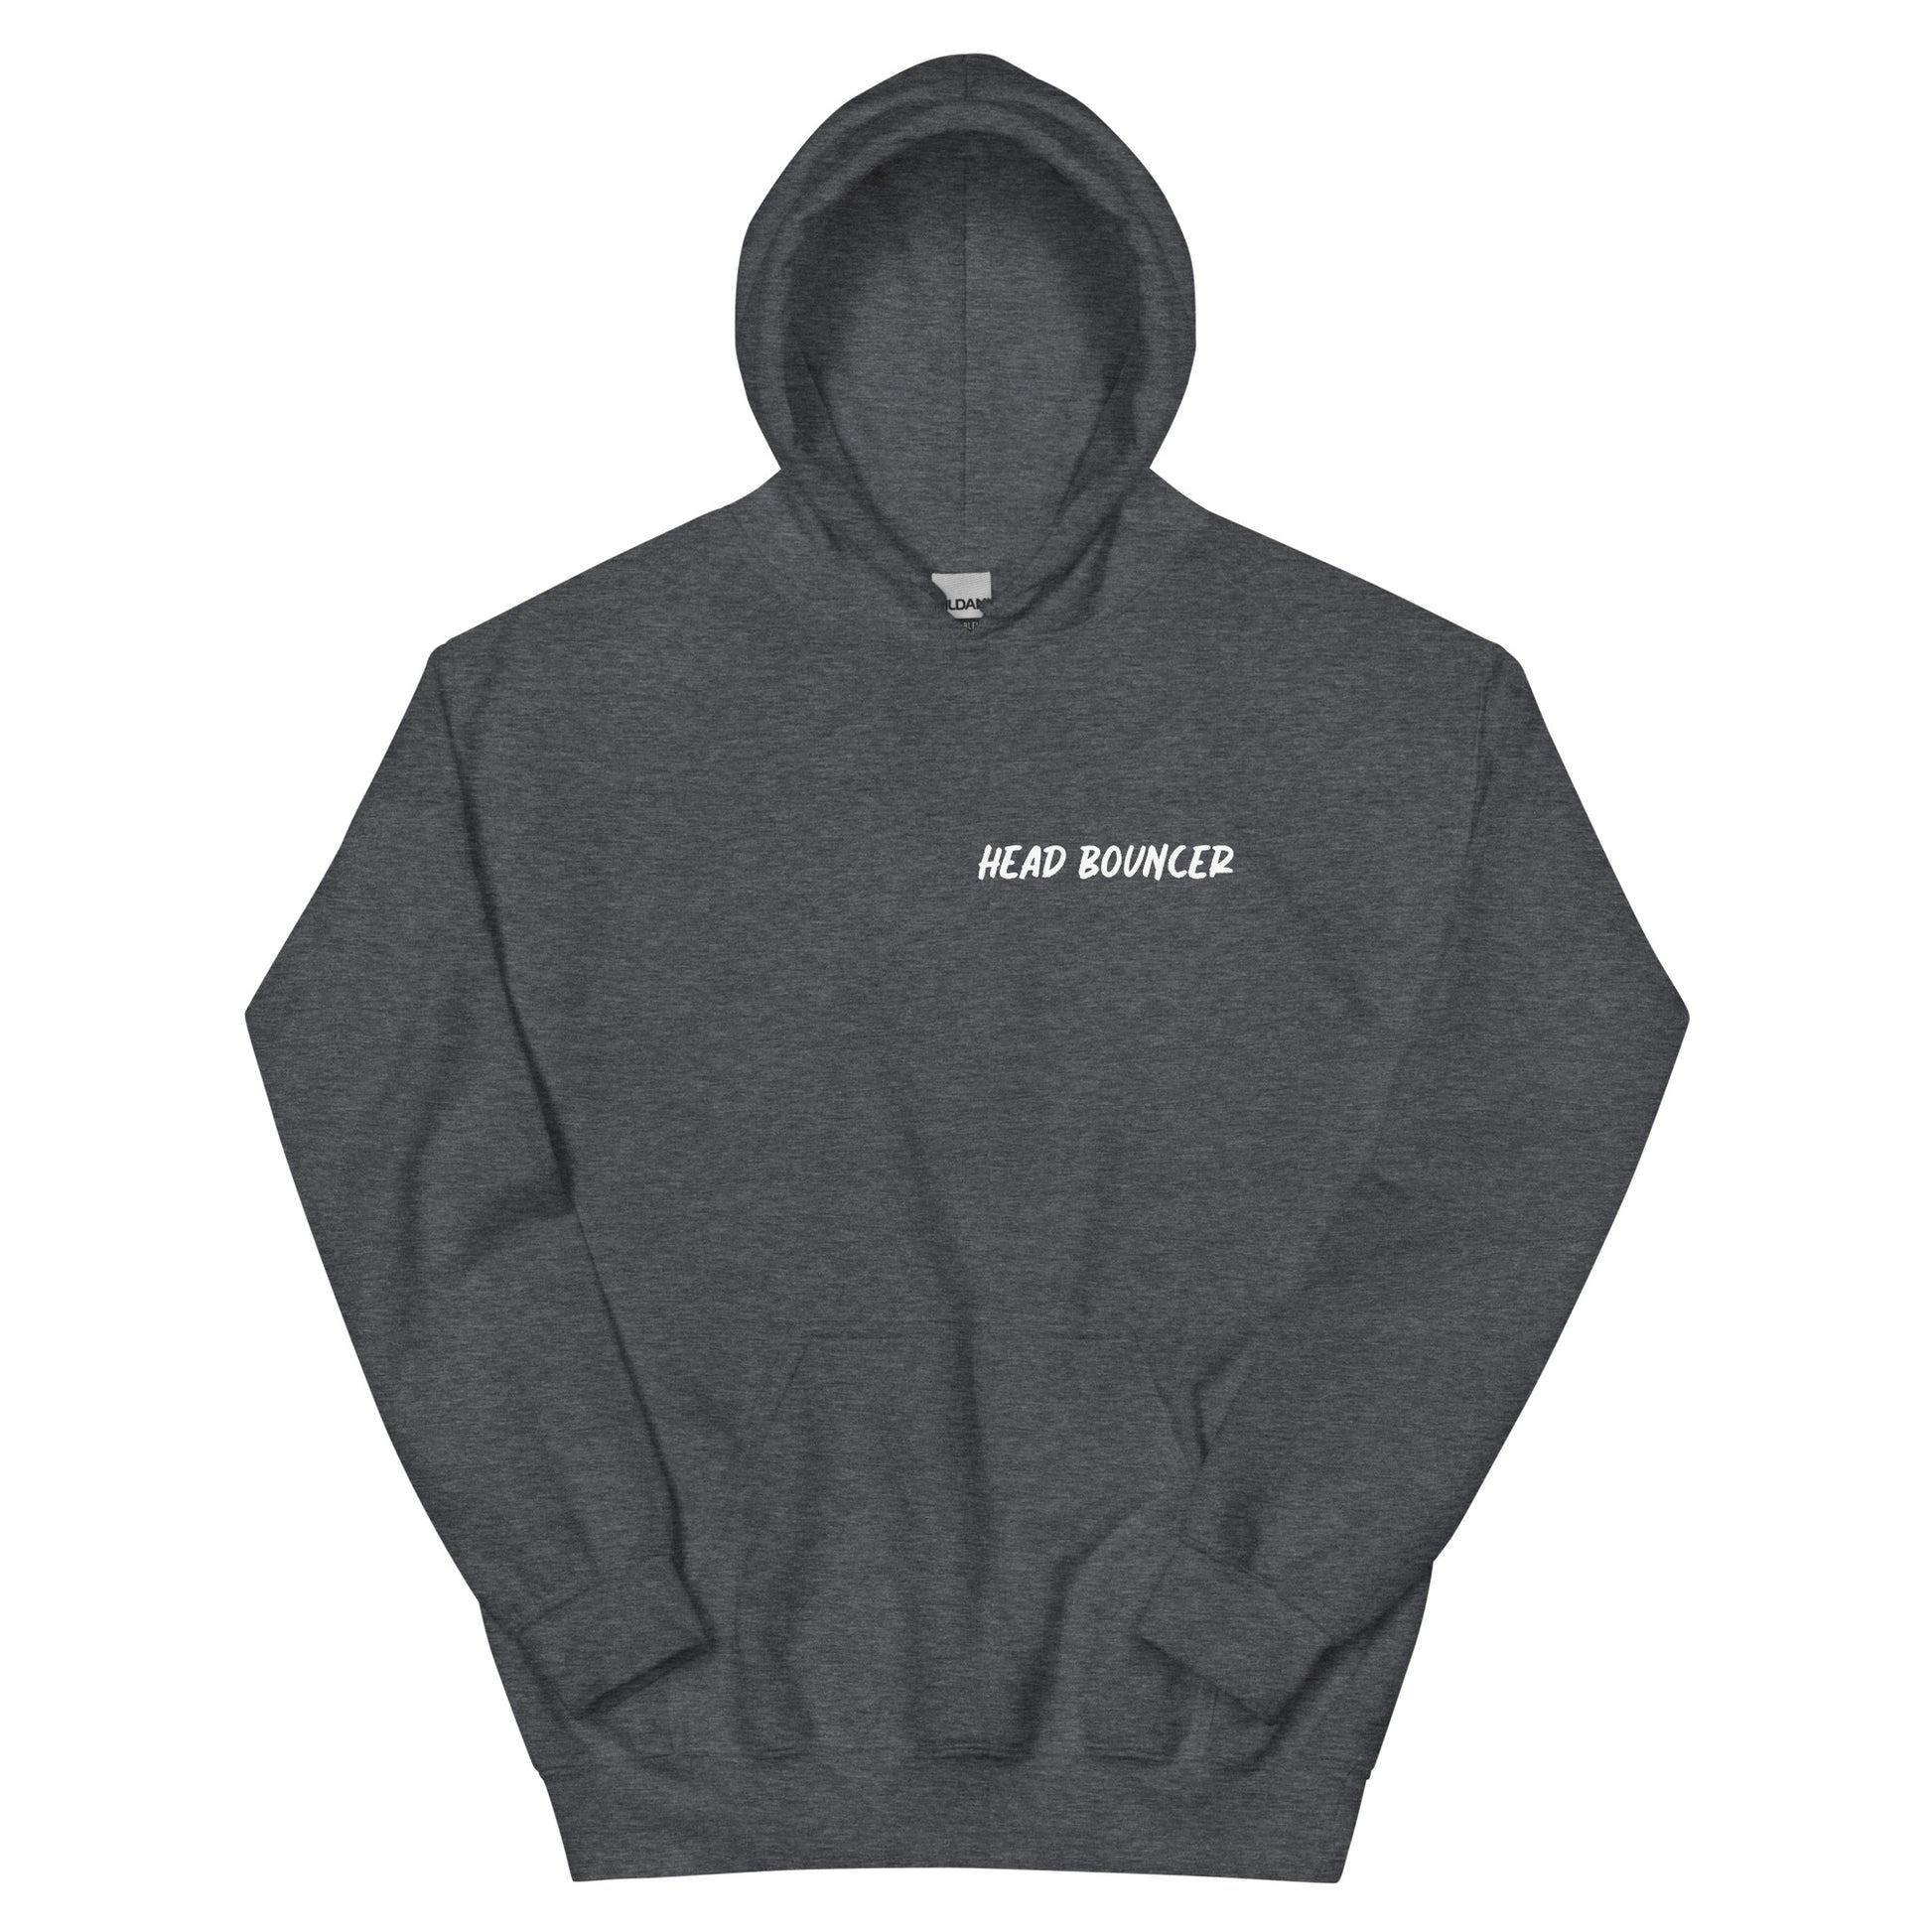 Dark heather sweatshirt hoodie that says 'Head Bouncer'